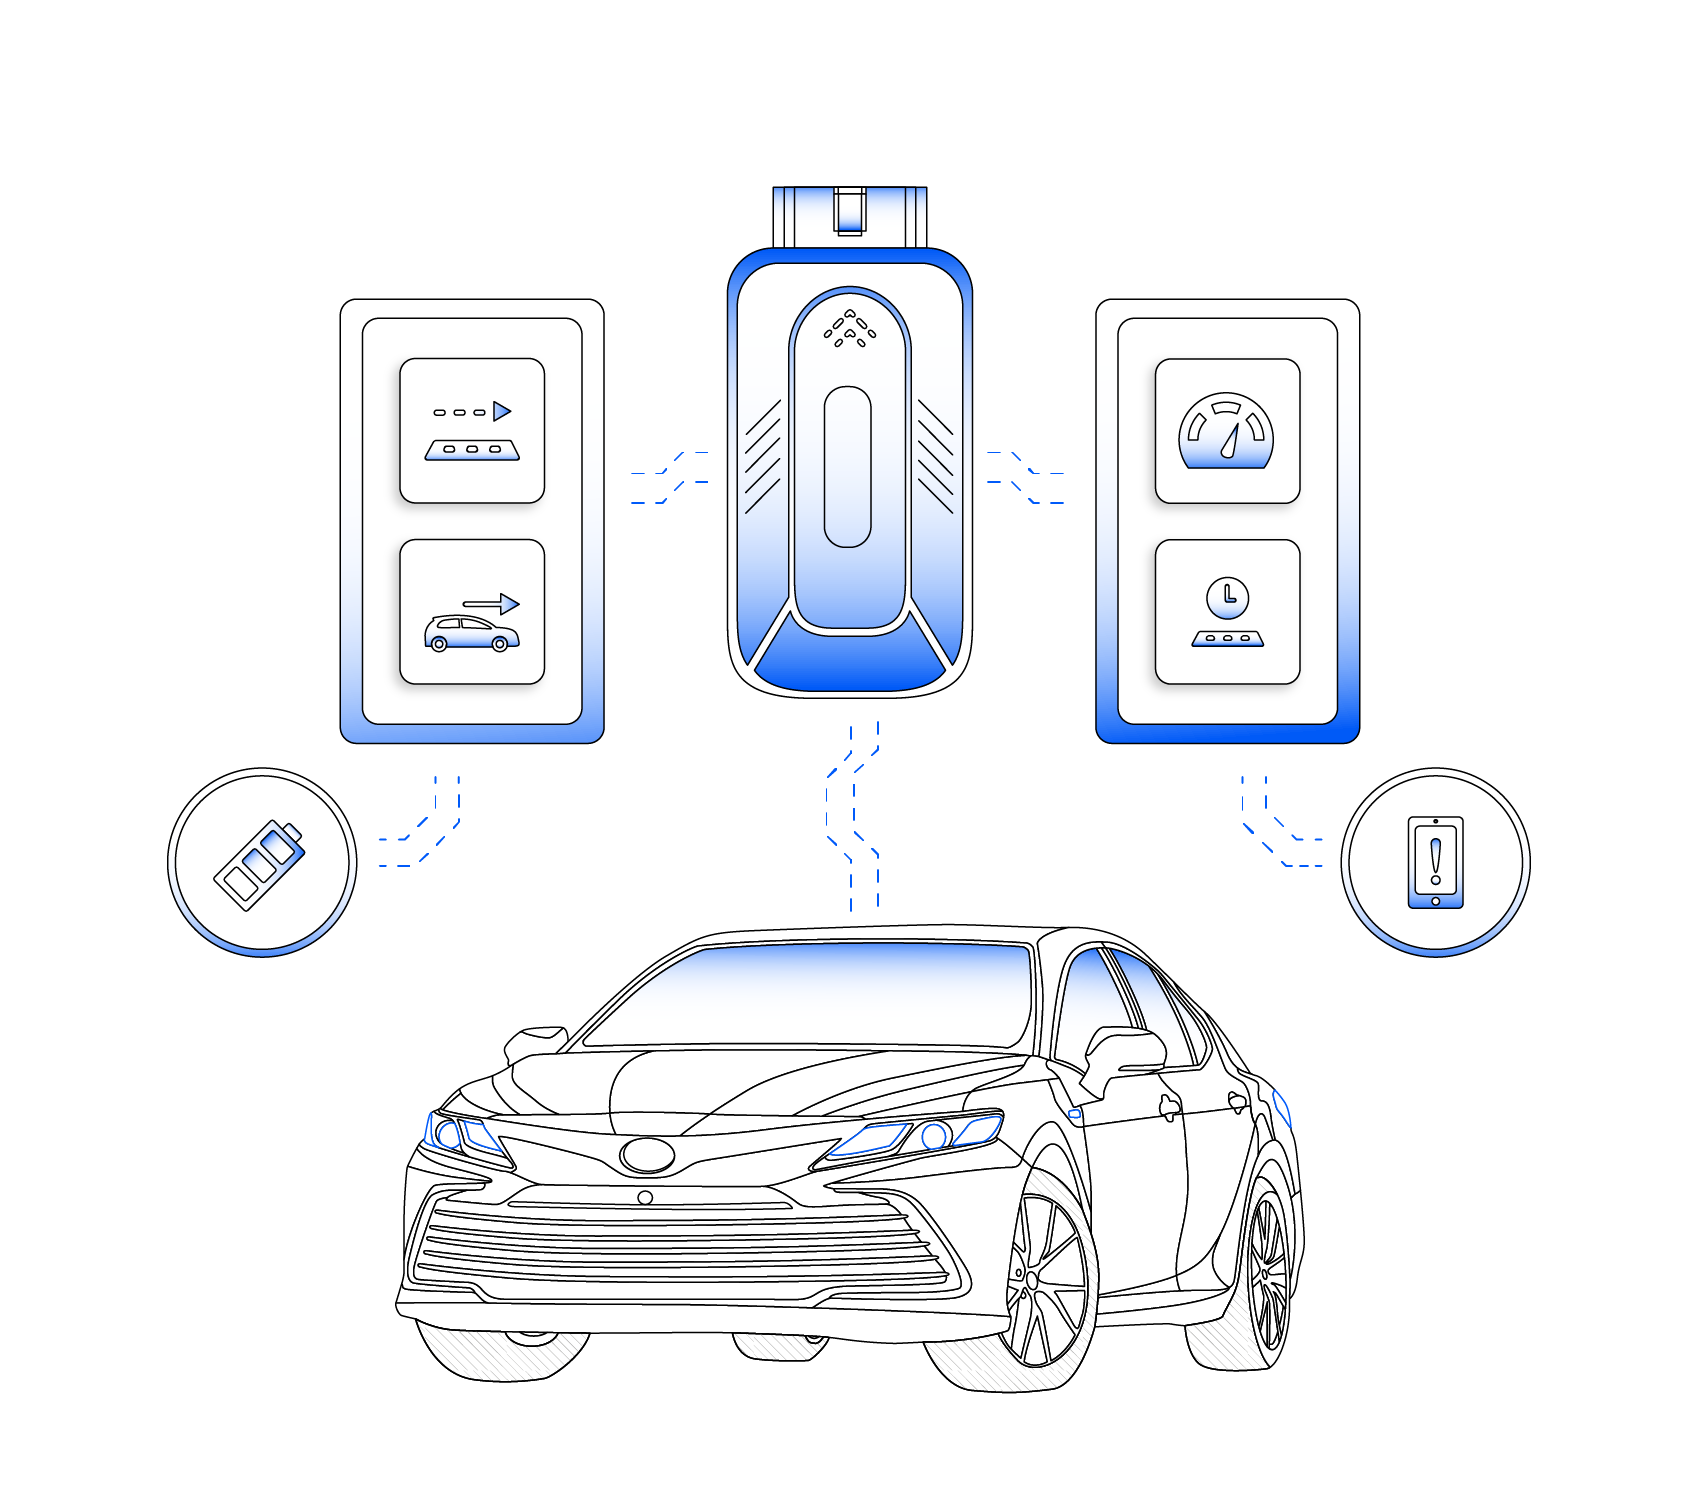 Toyota Camry vehicle data